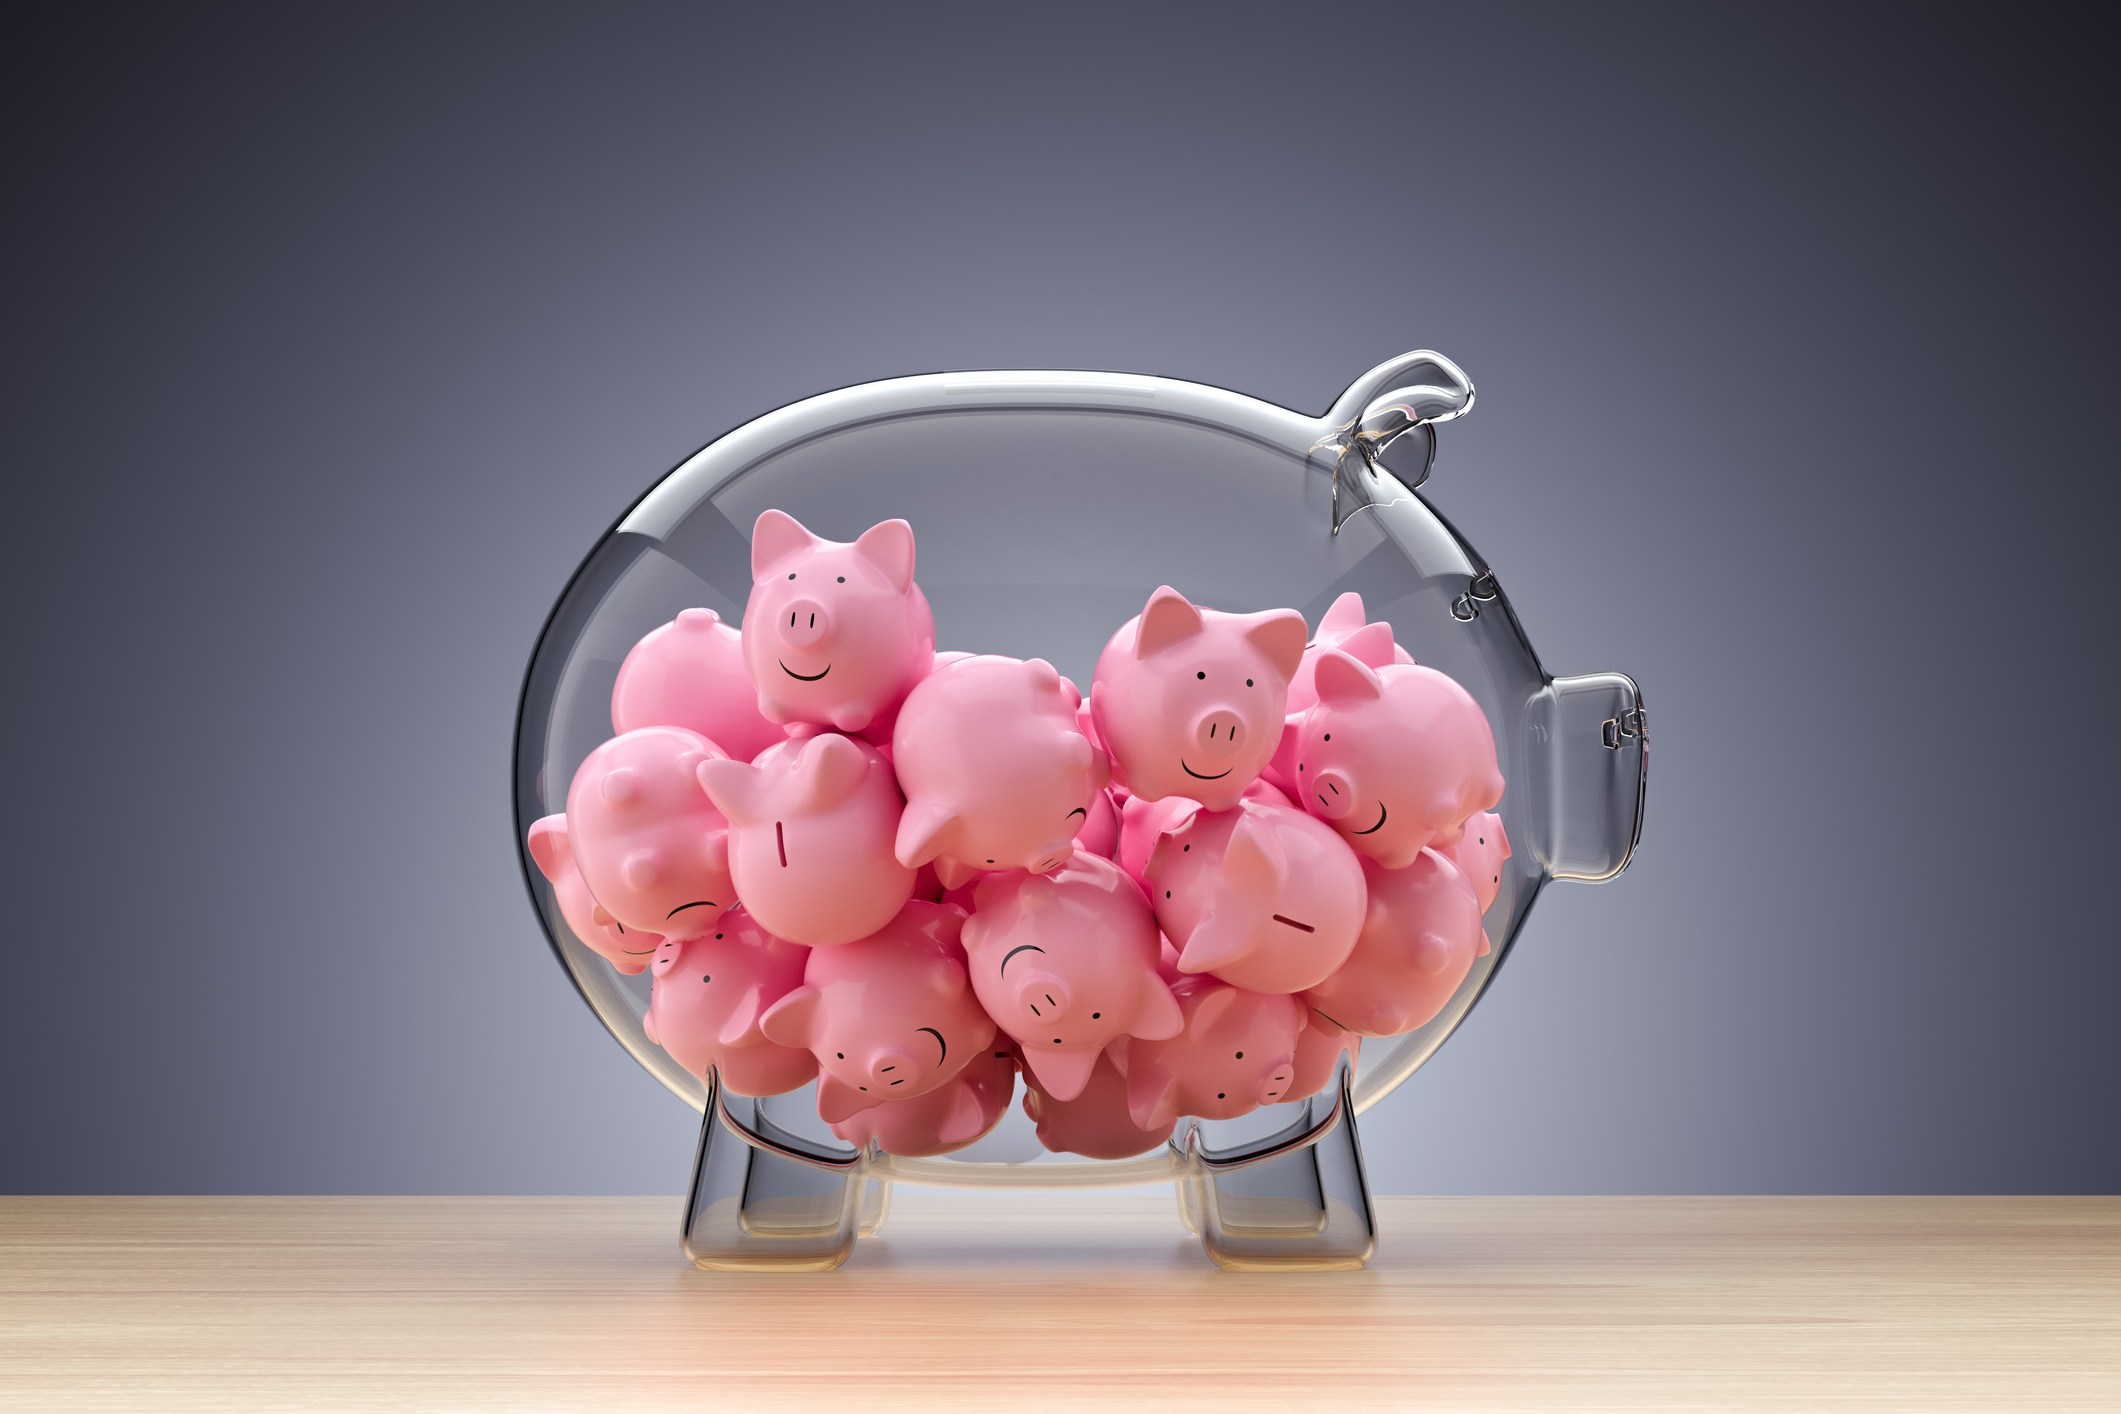 小さなピンクの子豚でいっぱいのガラスの貯金箱